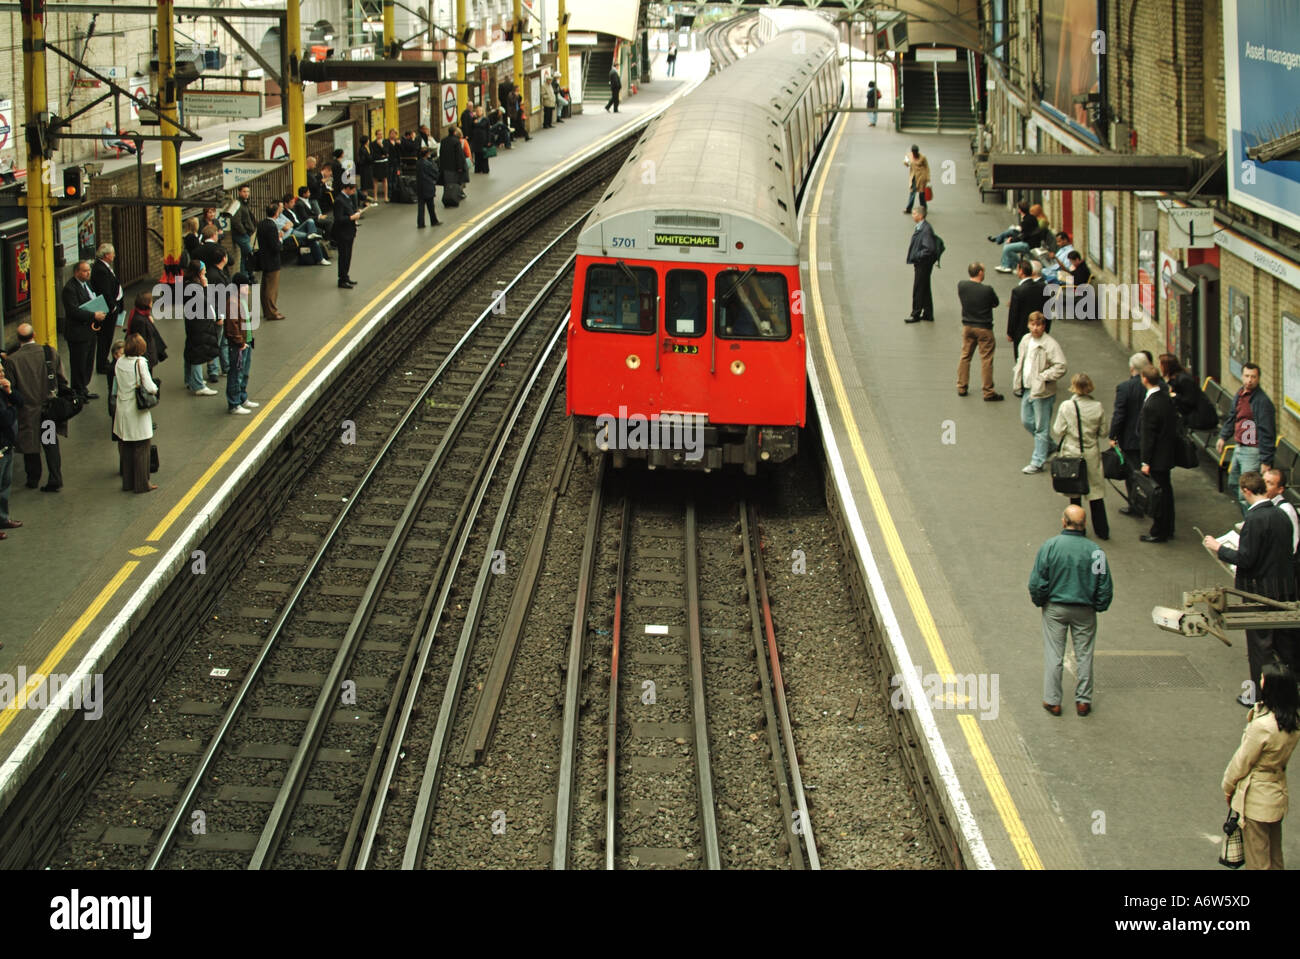 Aus der Vogelperspektive blicken Sie auf die elektrischen Bahnschienen und den Whitechapel-Zug, der an der U-Bahn-Station Farringdon ankommt, an den geschäftigen Bahnhöfen London England UK Stockfoto